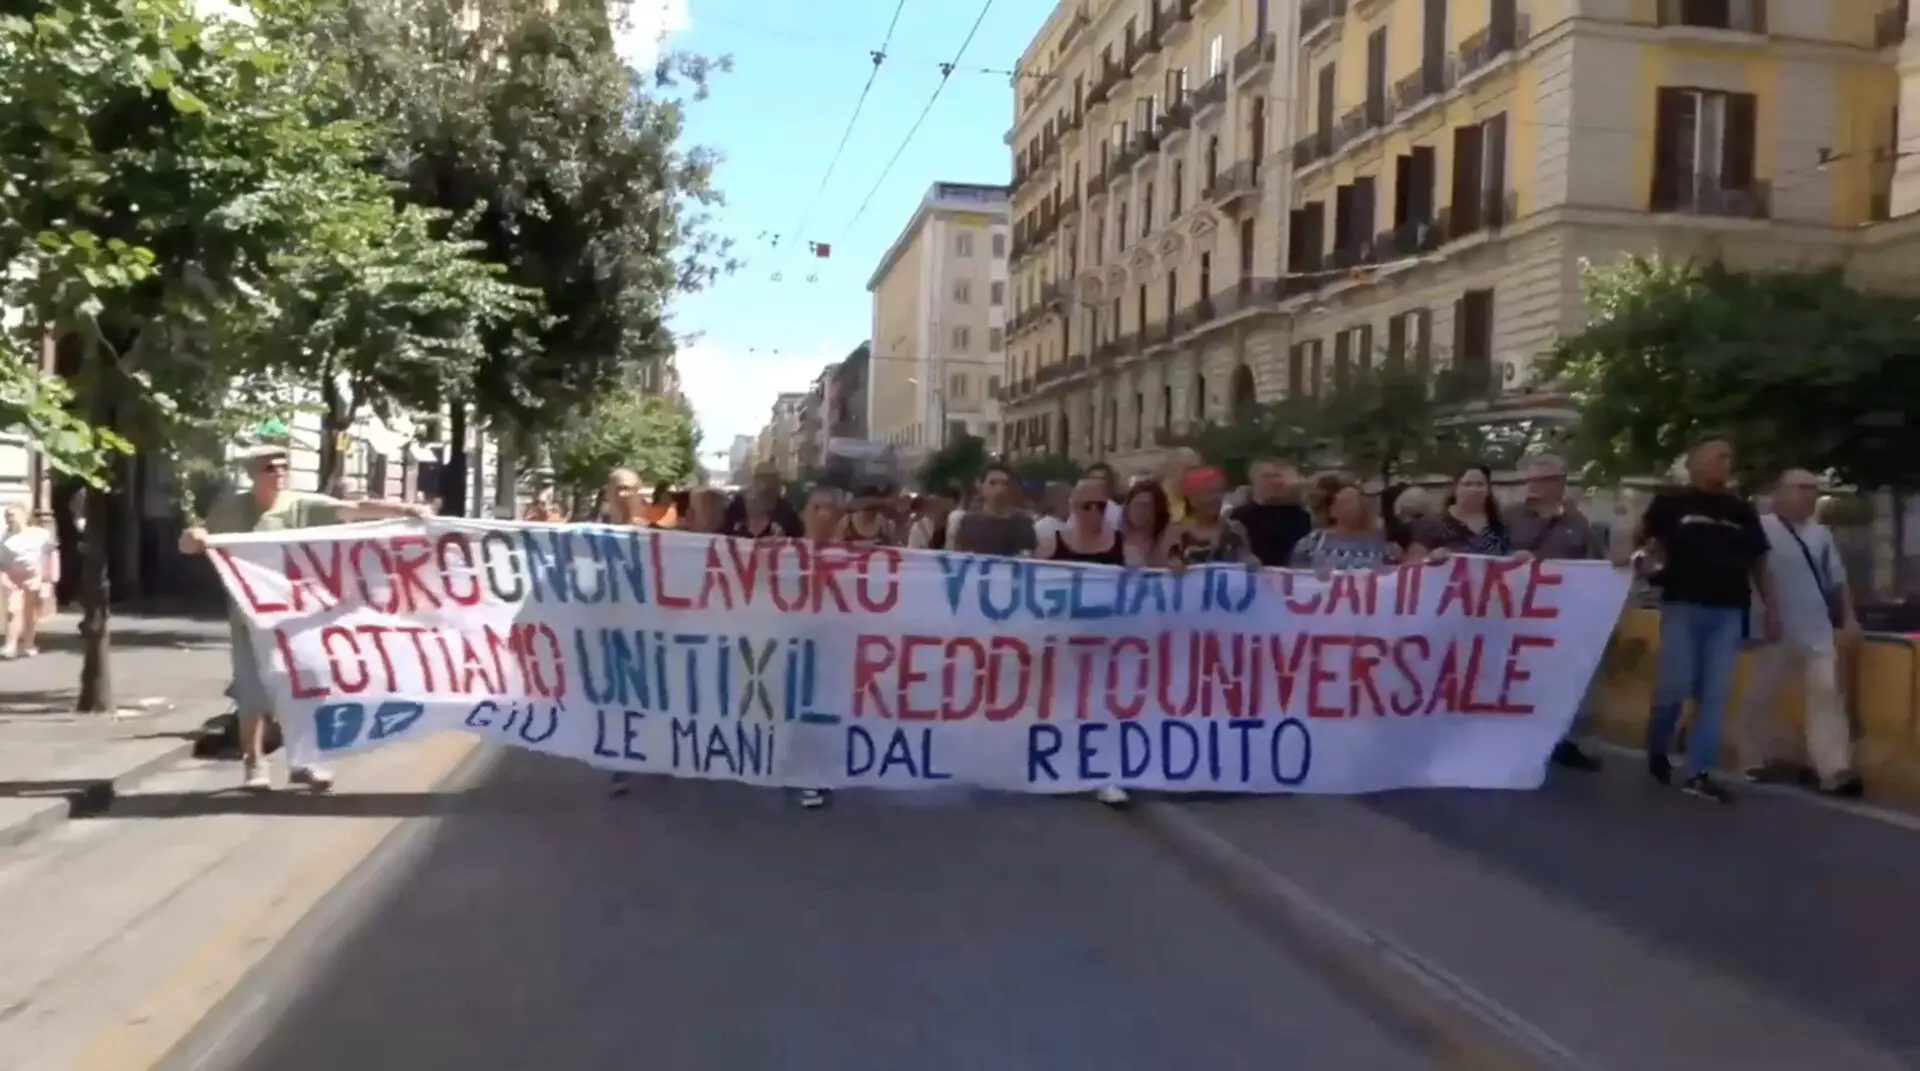 Reddito di cittadinanza, protesta sotto la sede di Fratelli d'Italia contro Giorgia Meloni: "Giù le mani"